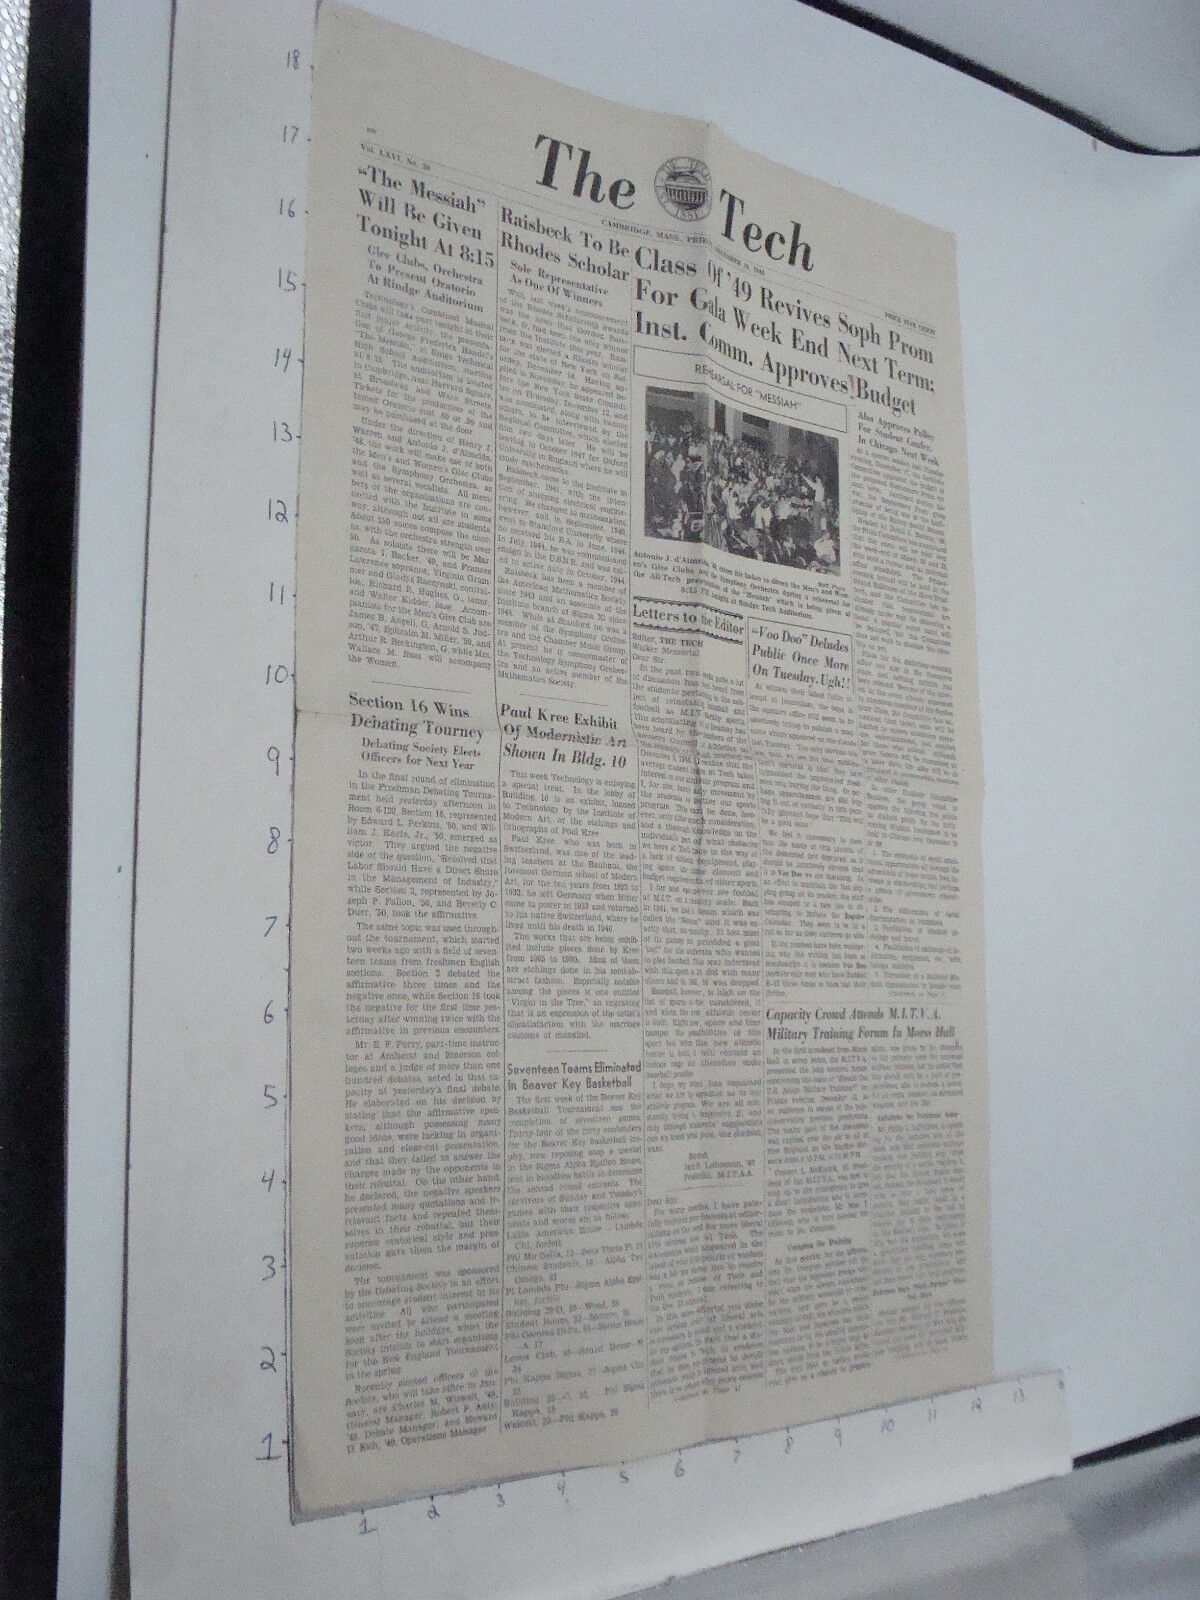 ORIGINAL - THE TECH - dec 20, 1946 Cambridge Mass newspaper - i show all